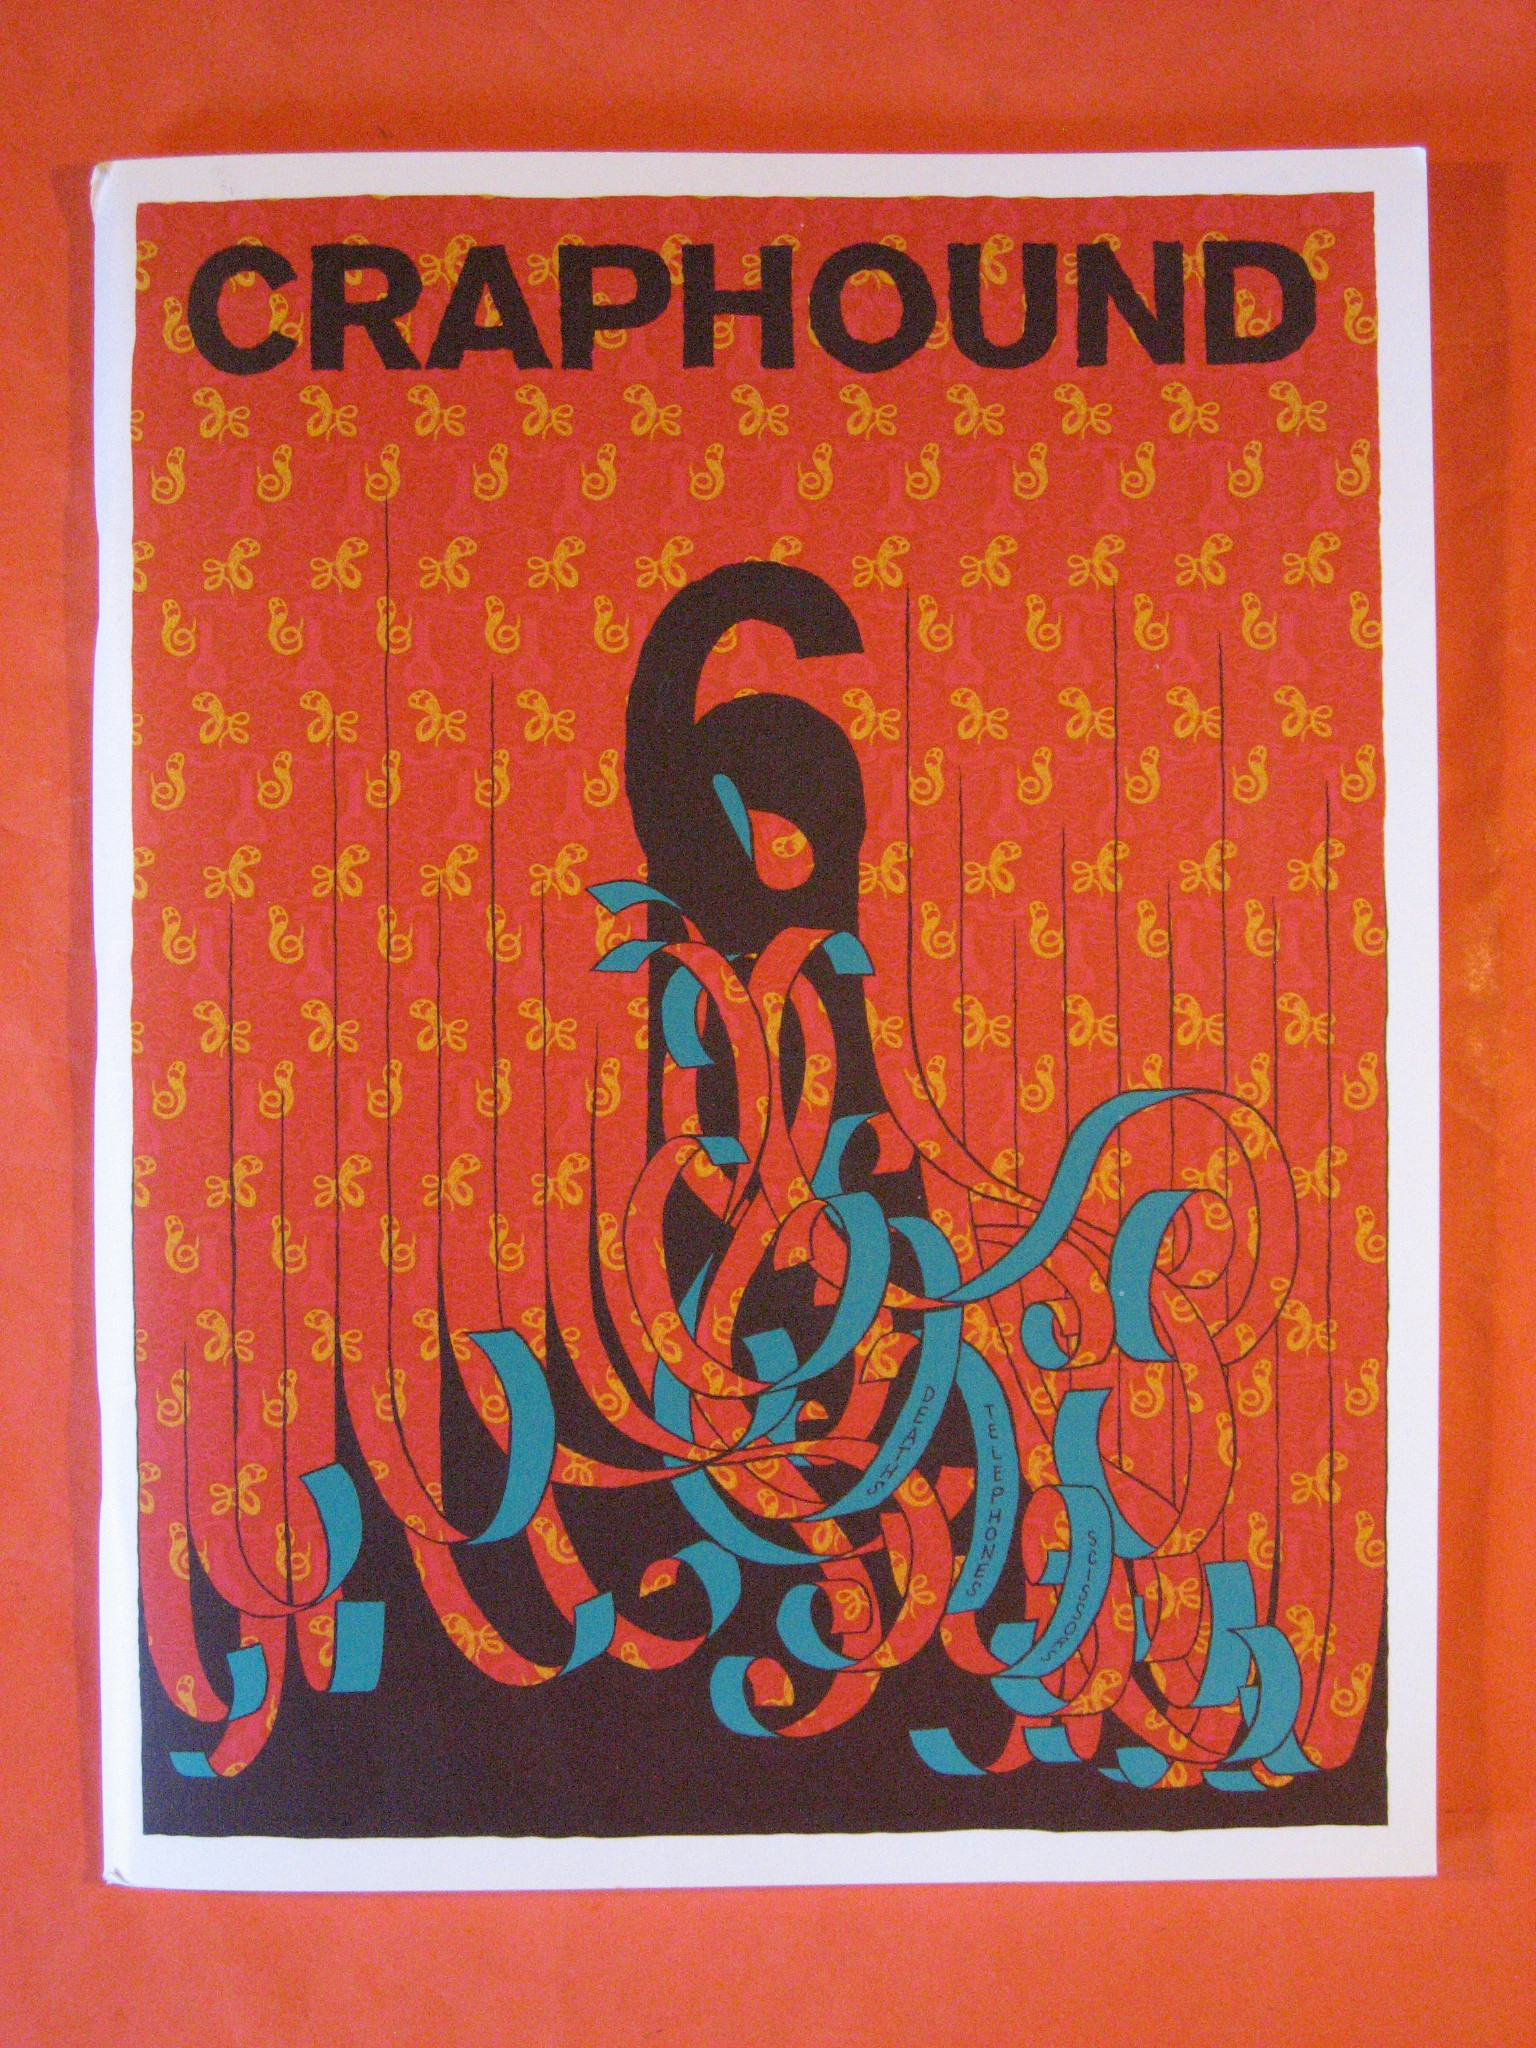 Image for Crap Hound #6 ; Death, Telephones & Scissors